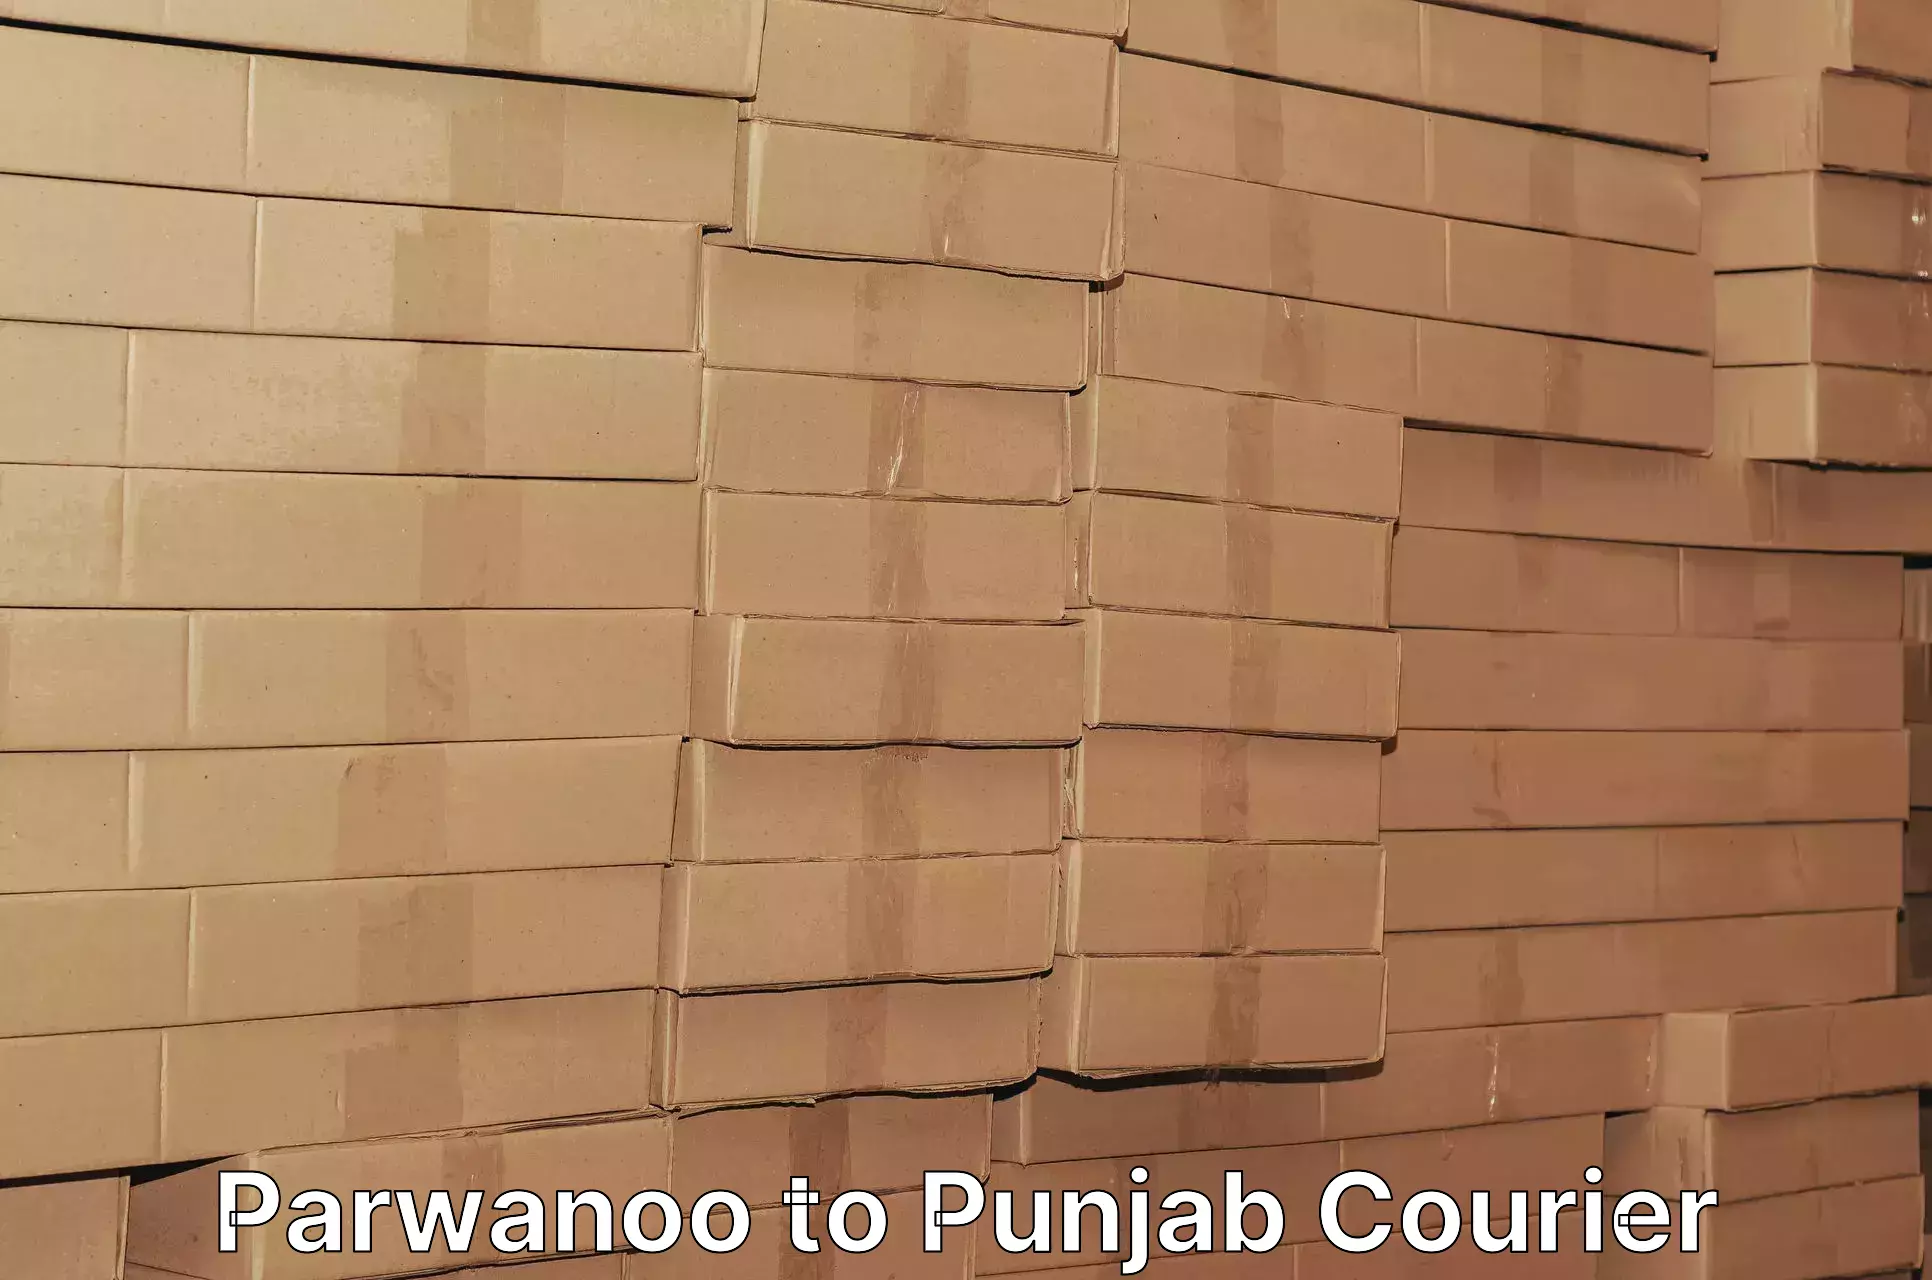 Reliable shipping partners Parwanoo to Nangal